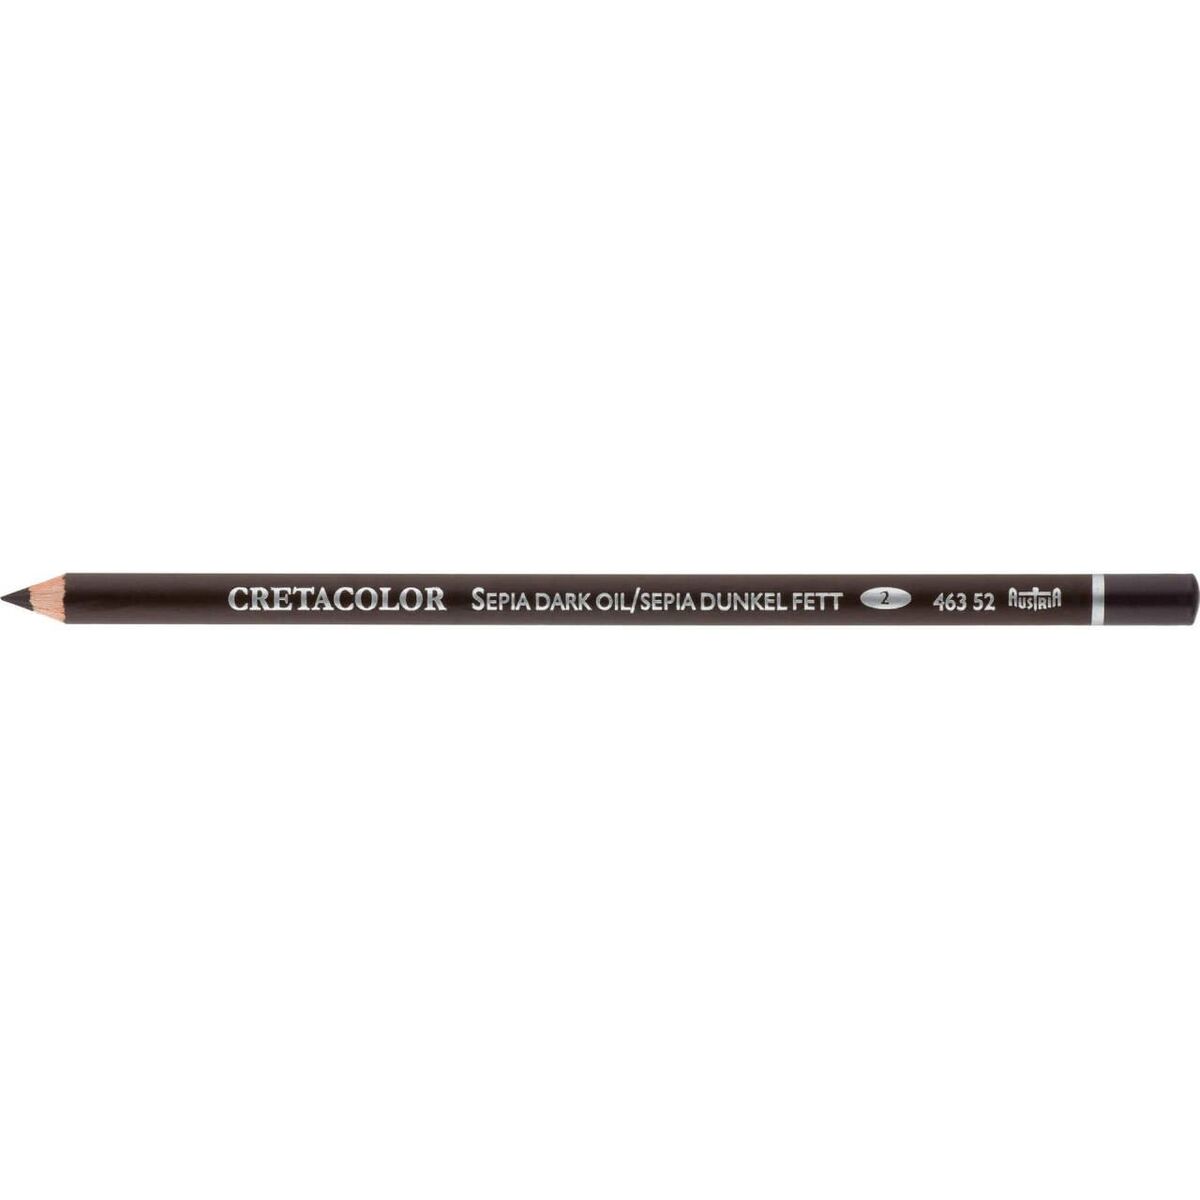 Cretacolor Pencil : Sepia Dark